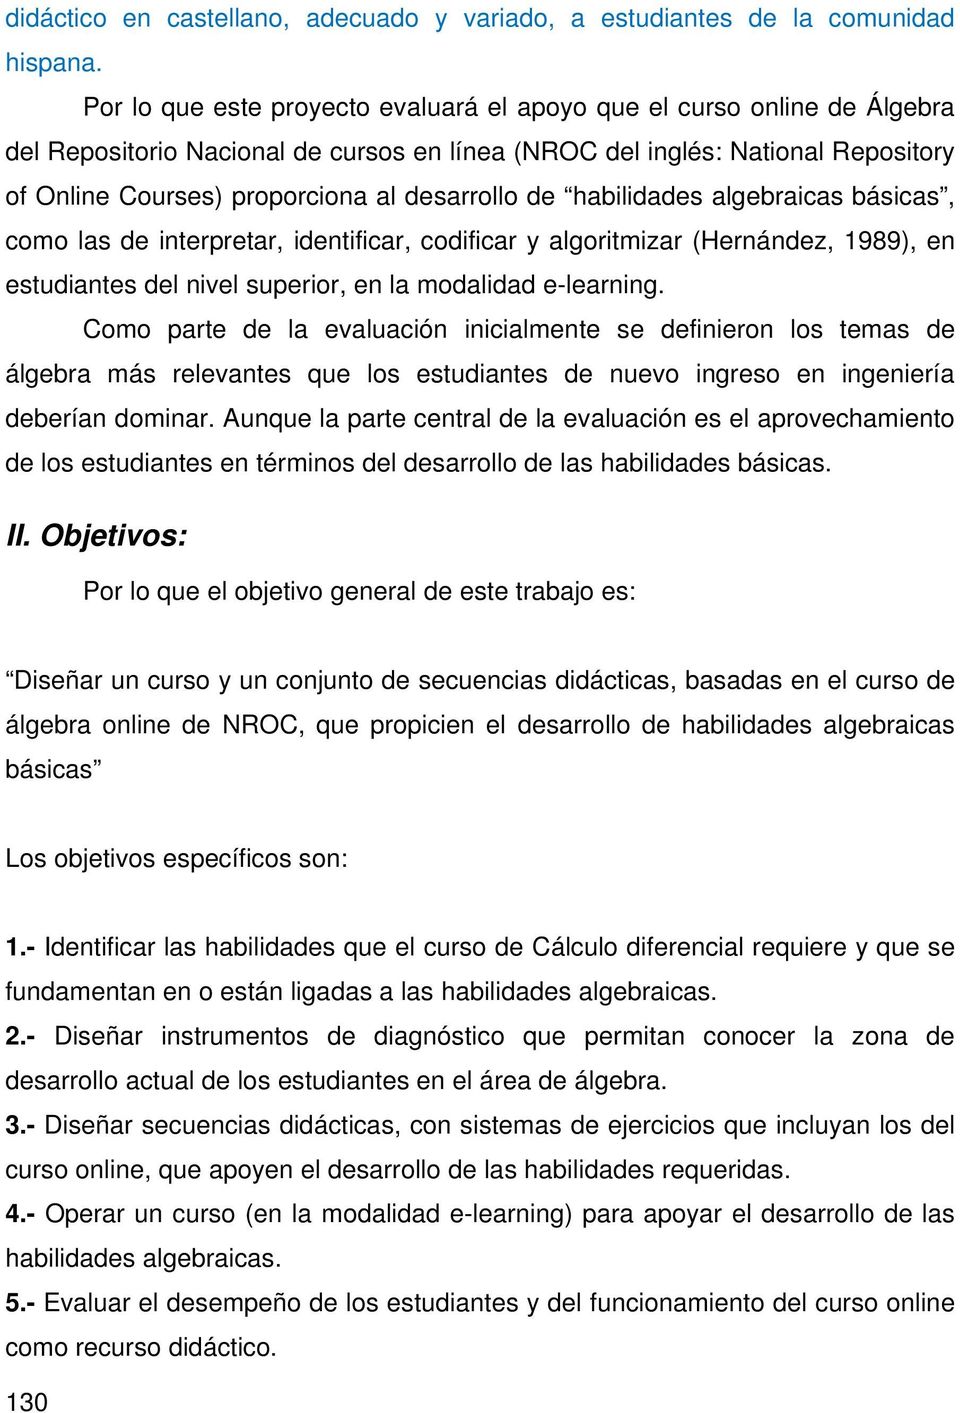 desarrollo de habilidades algebraicas básicas, como las de interpretar, identificar, codificar y algoritmizar (Hernández, 1989), en estudiantes del nivel superior, en la modalidad e-learning.